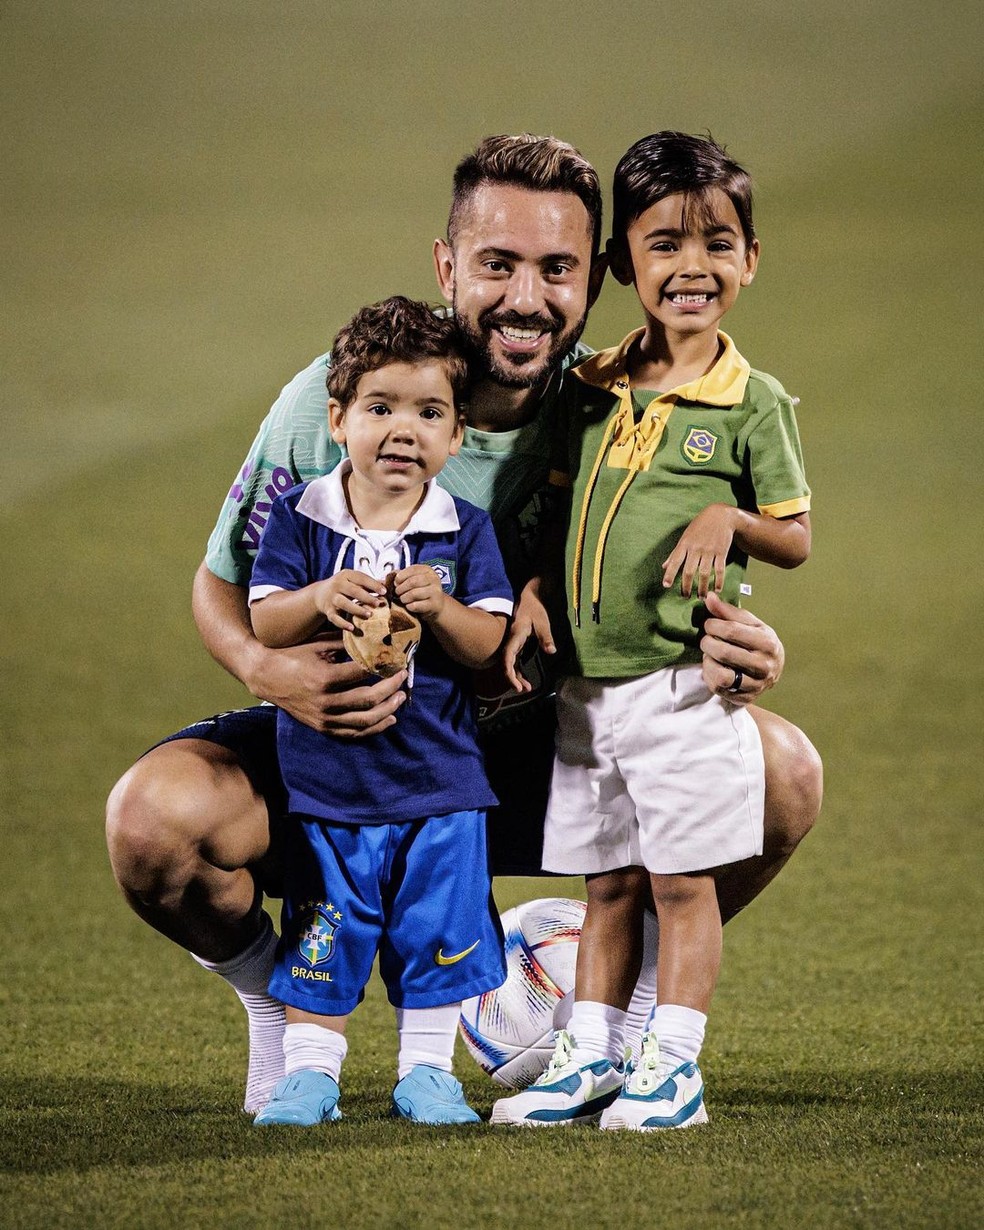 Everton Moraes faz sucesso nas redes sociais com seus vídeos engraçados